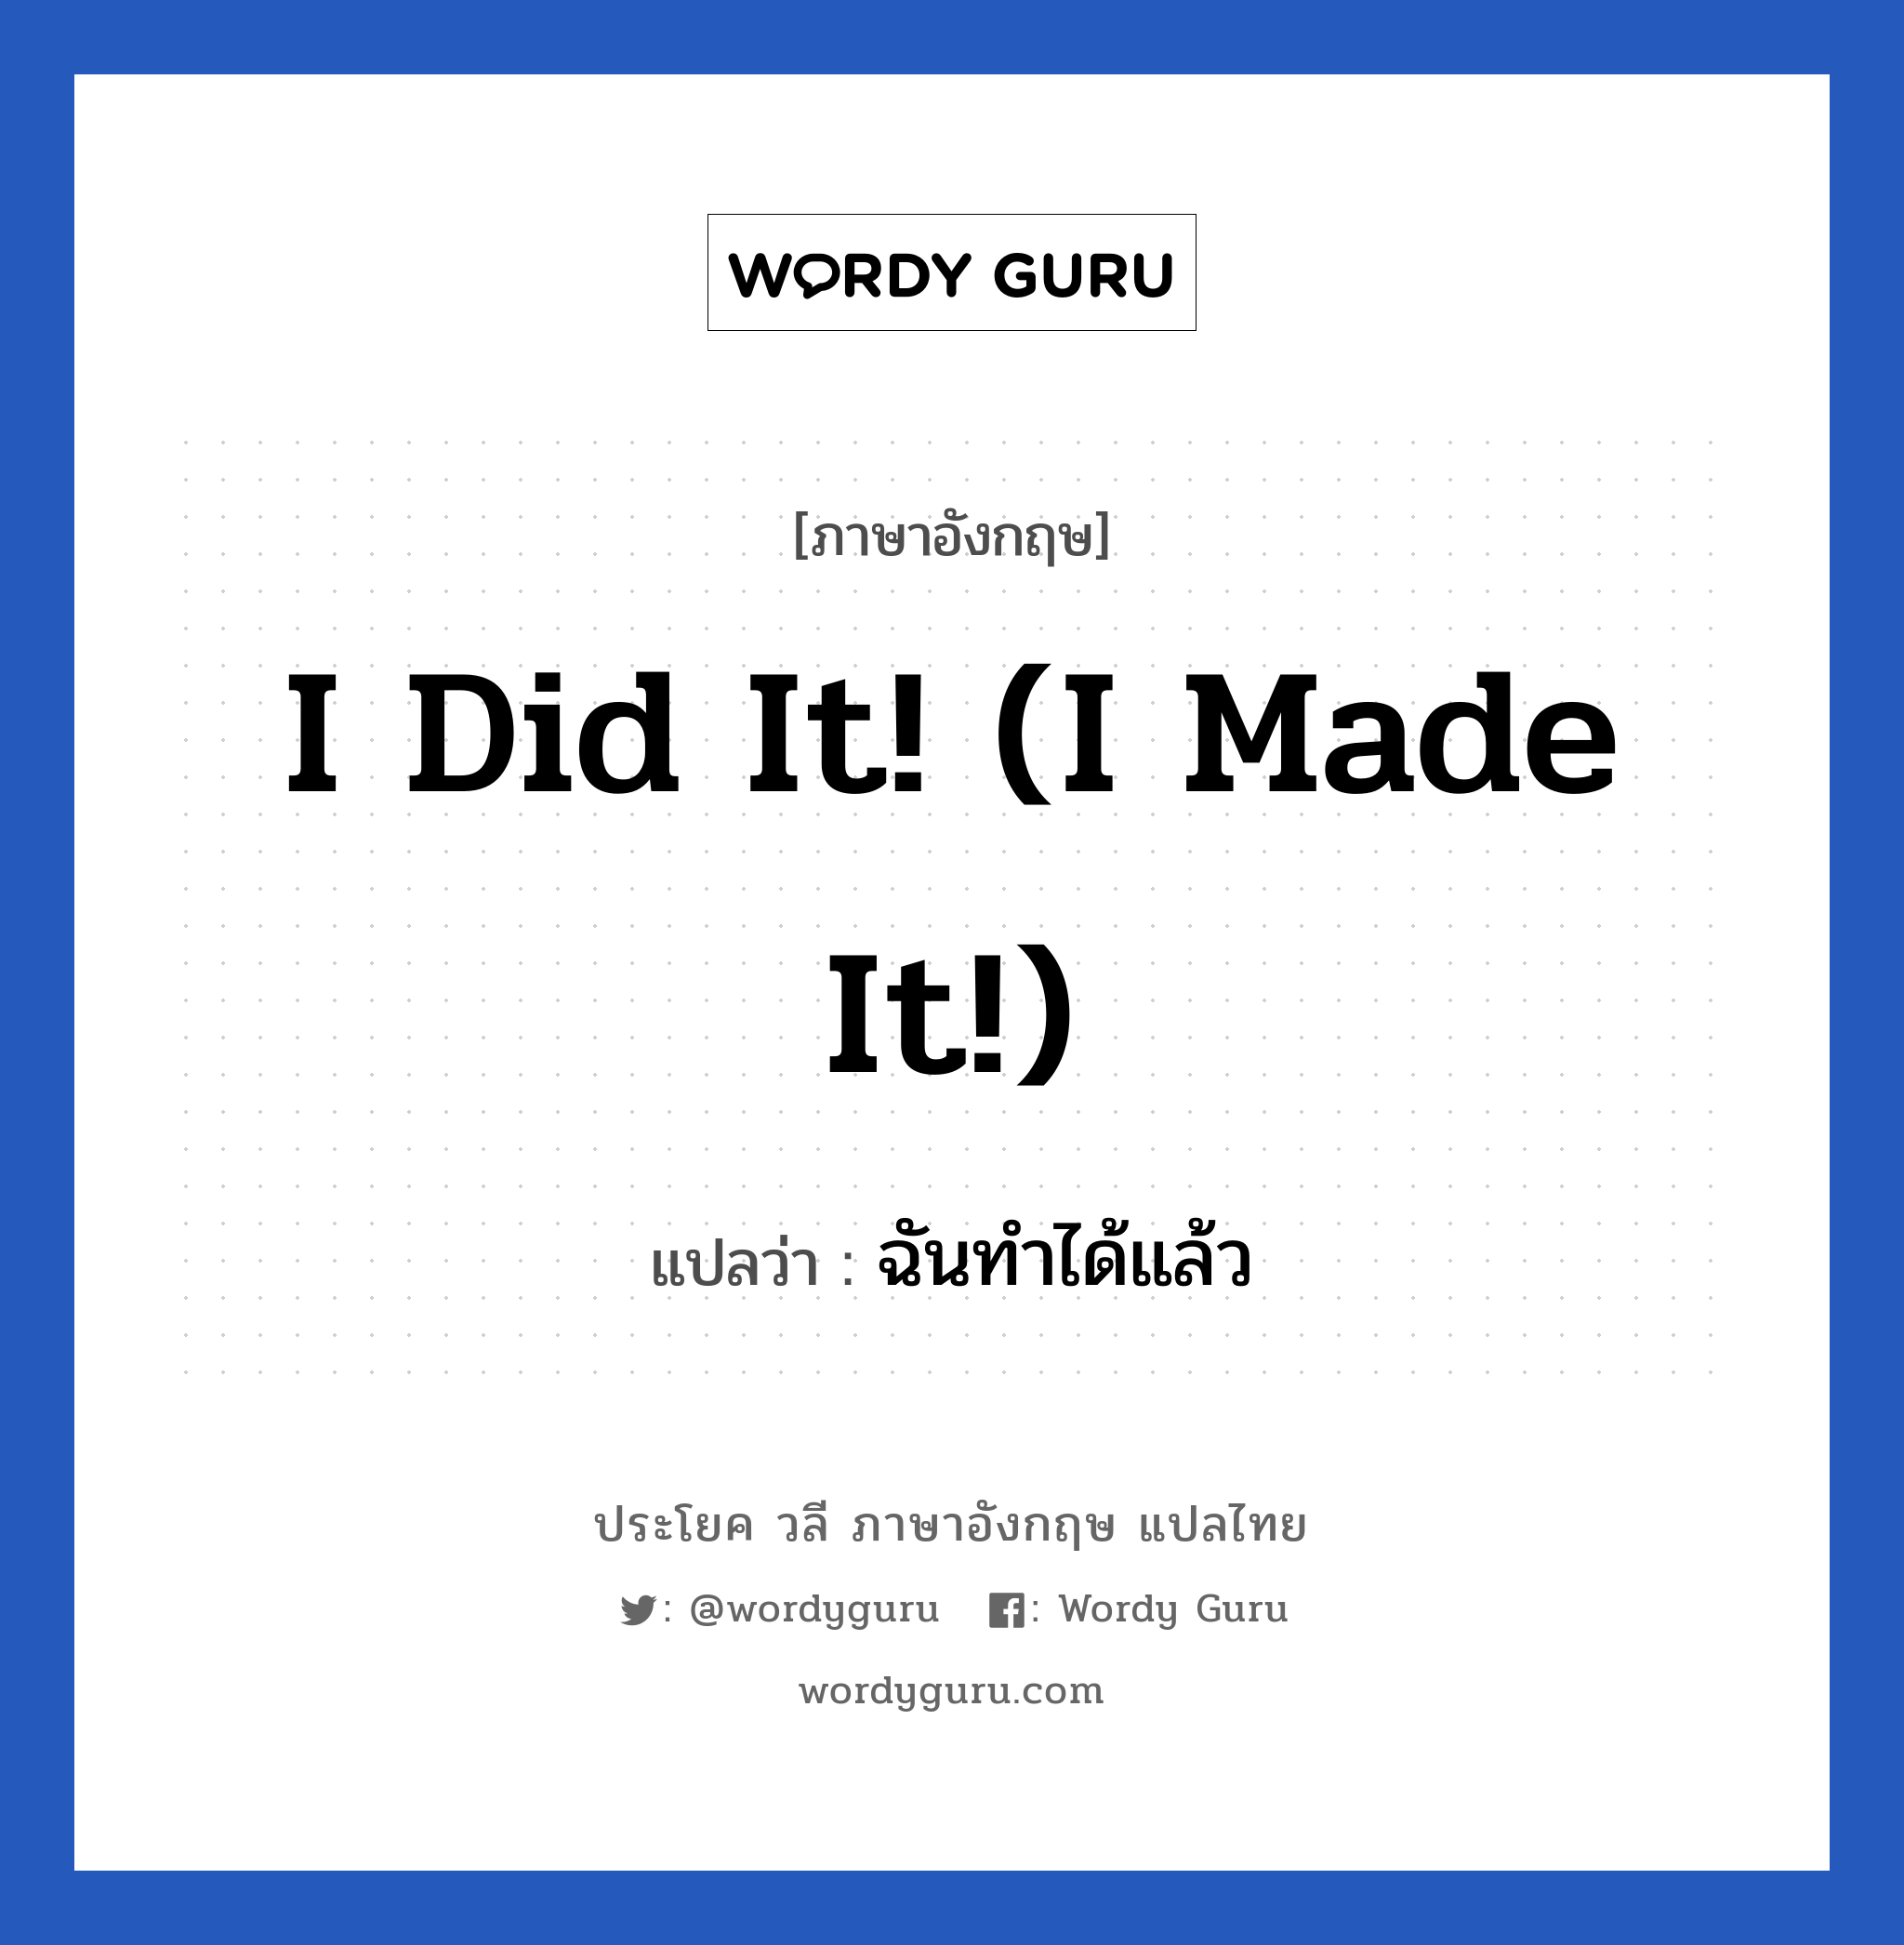 ฉันทำได้แล้ว ภาษาอังกฤษ?, วลีภาษาอังกฤษ ฉันทำได้แล้ว แปลว่า I did it! (I made it!)